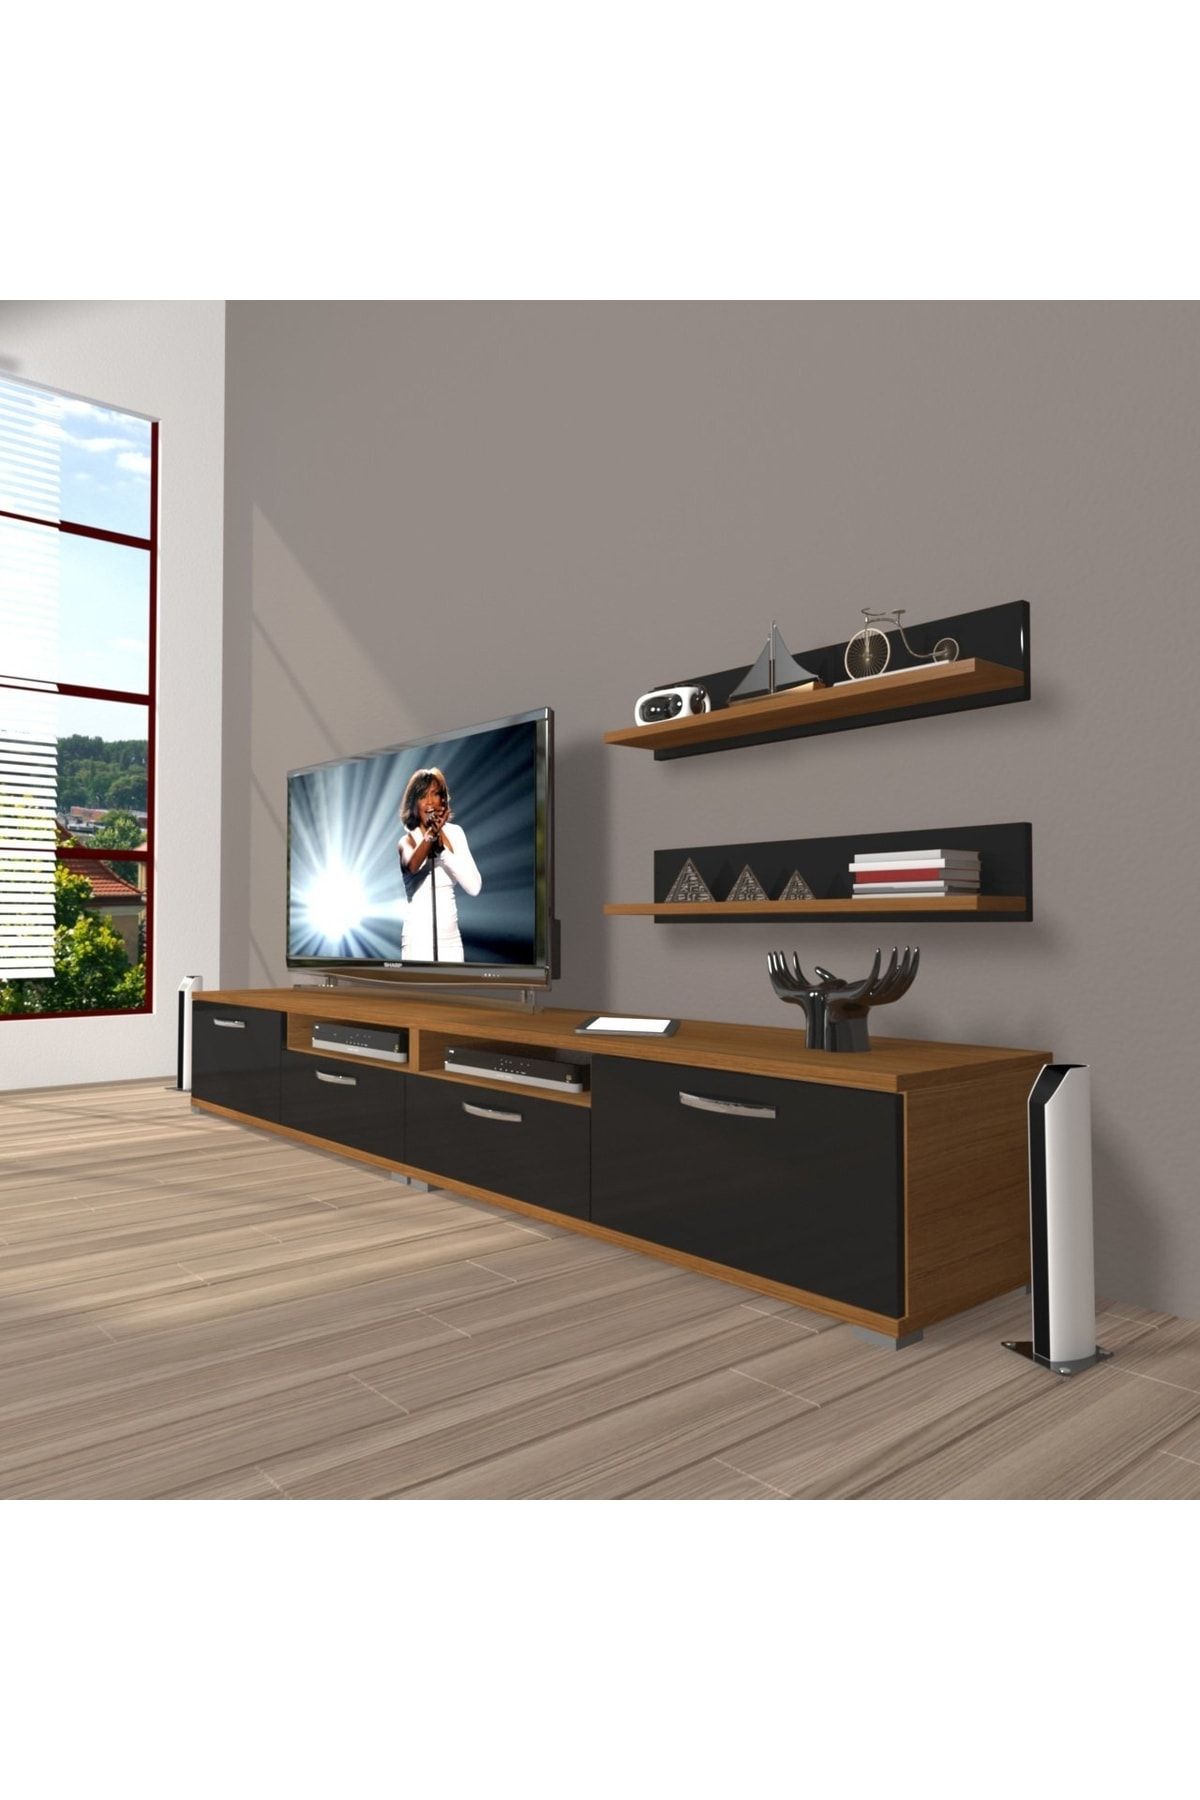 Decoraktiv Eko 200r Slm Tv Ünitesi Tv Sehpası - Ceviz - Siyah